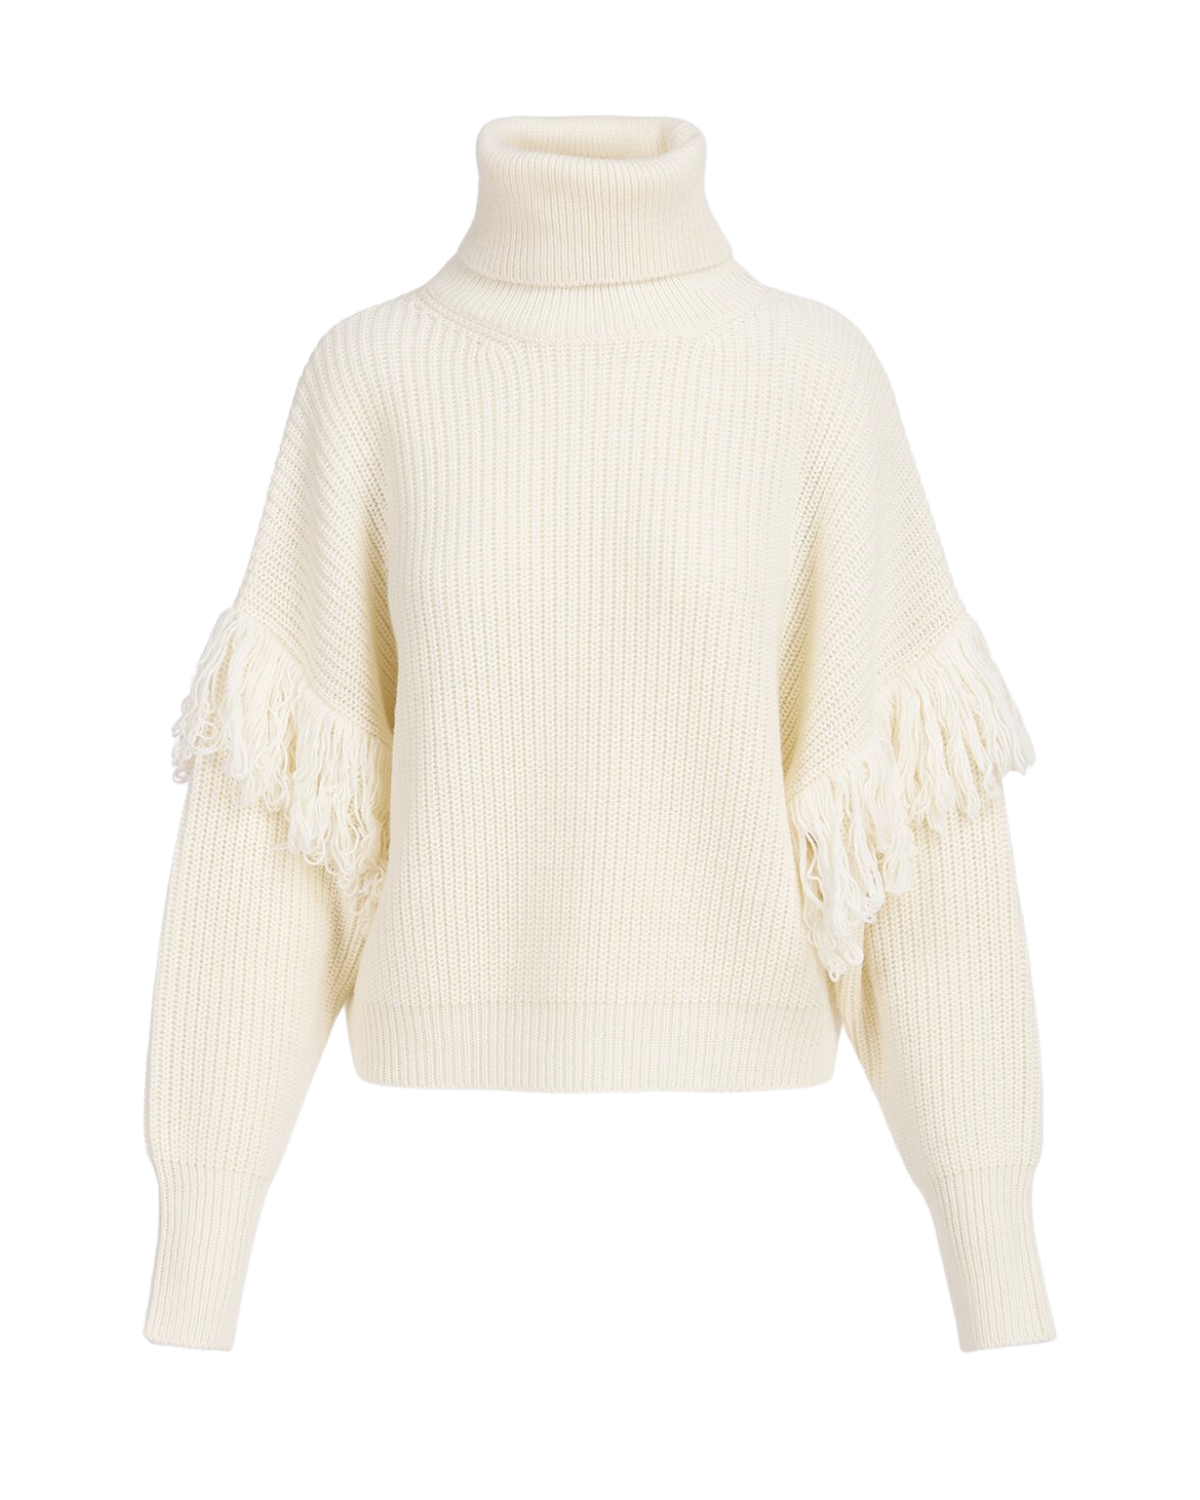 Ejoy Knitted Turtleneck Fringe Sweater (Oat Latte)